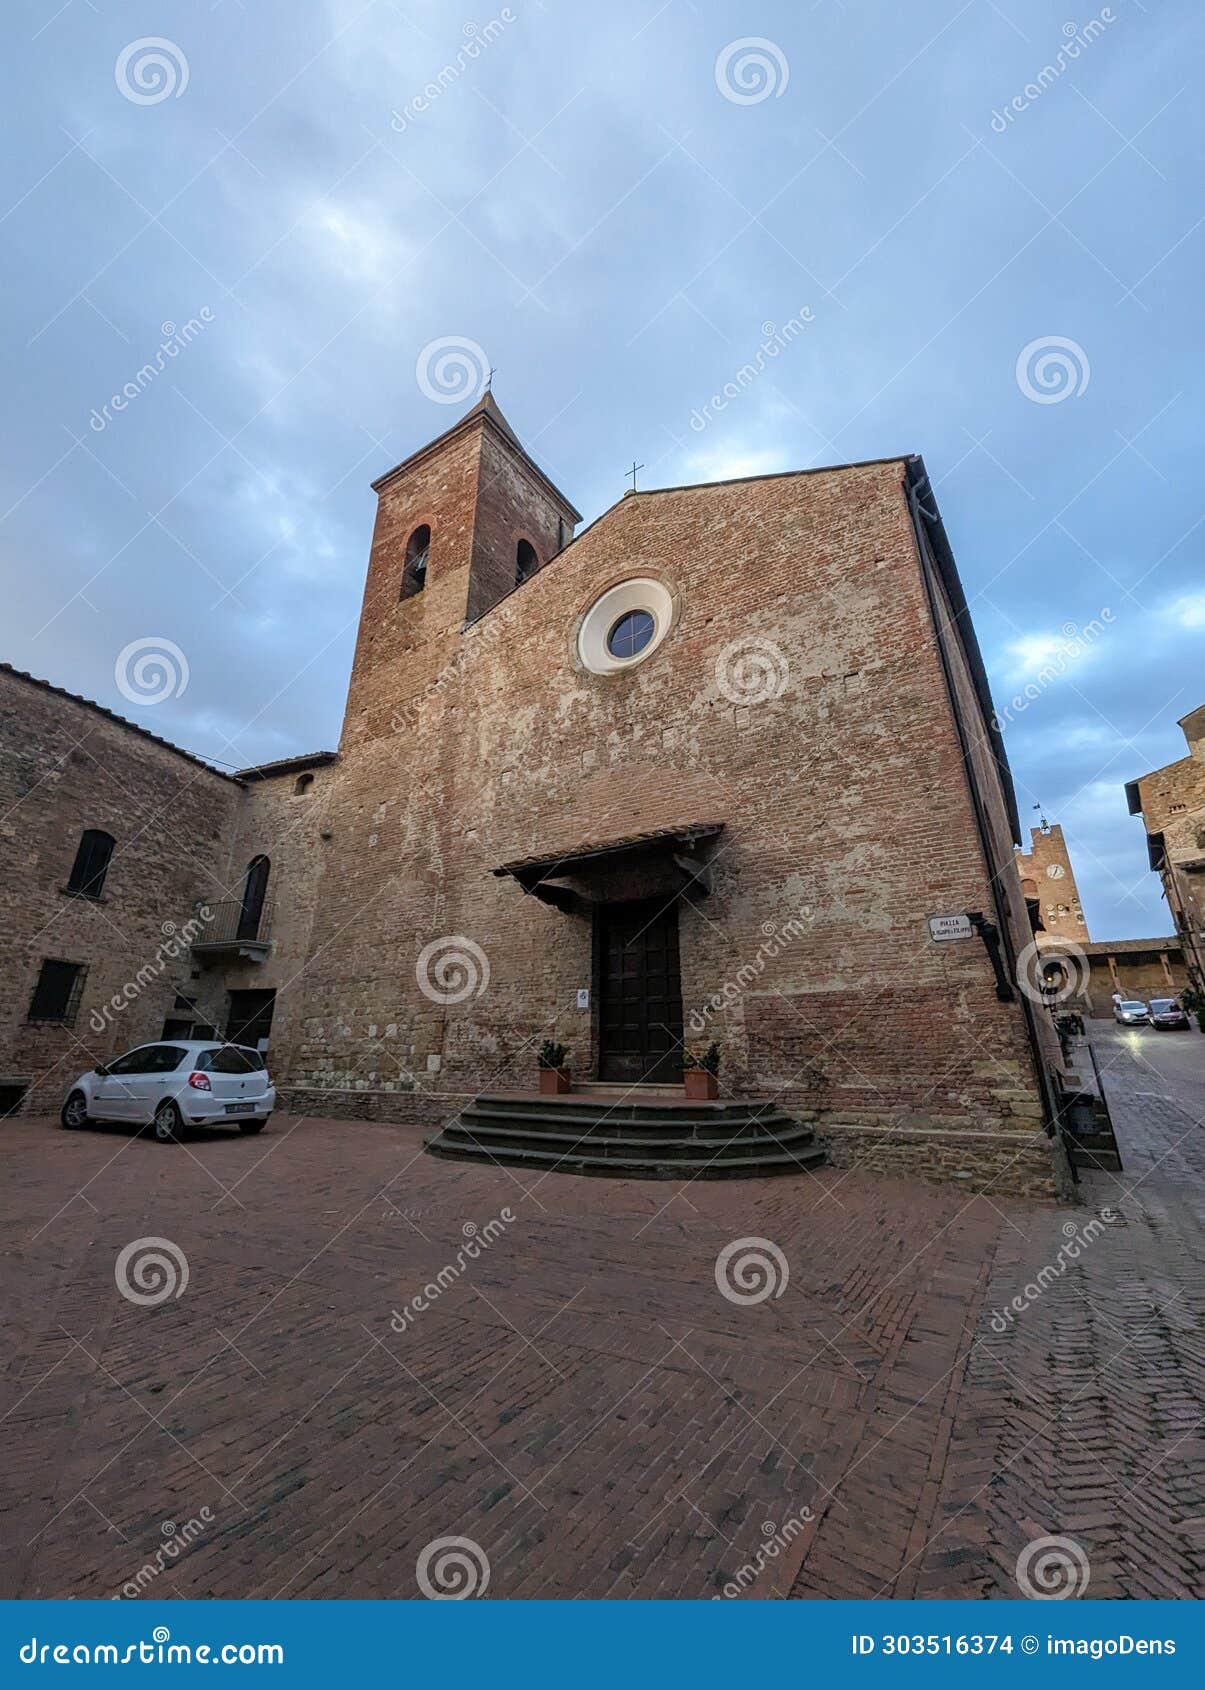 the old church santi jacopo e filippo in certaldo, burial place of famous painter giovanni boccaccio